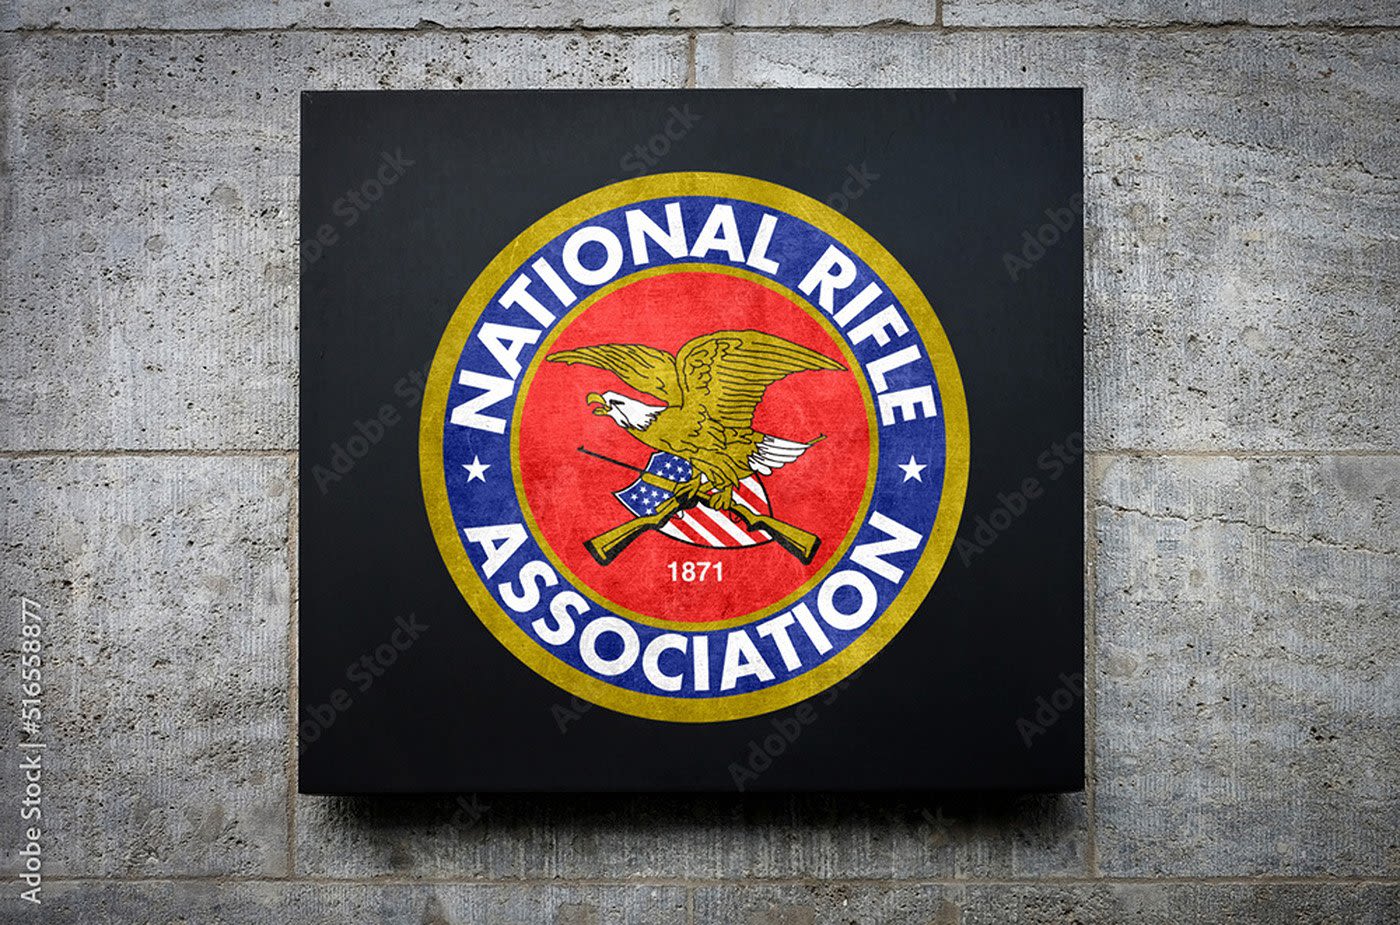 Bob Barr elected NRA President, Doug Hamlin elected as NRA Executive Vice President & CEO - Outdoor News